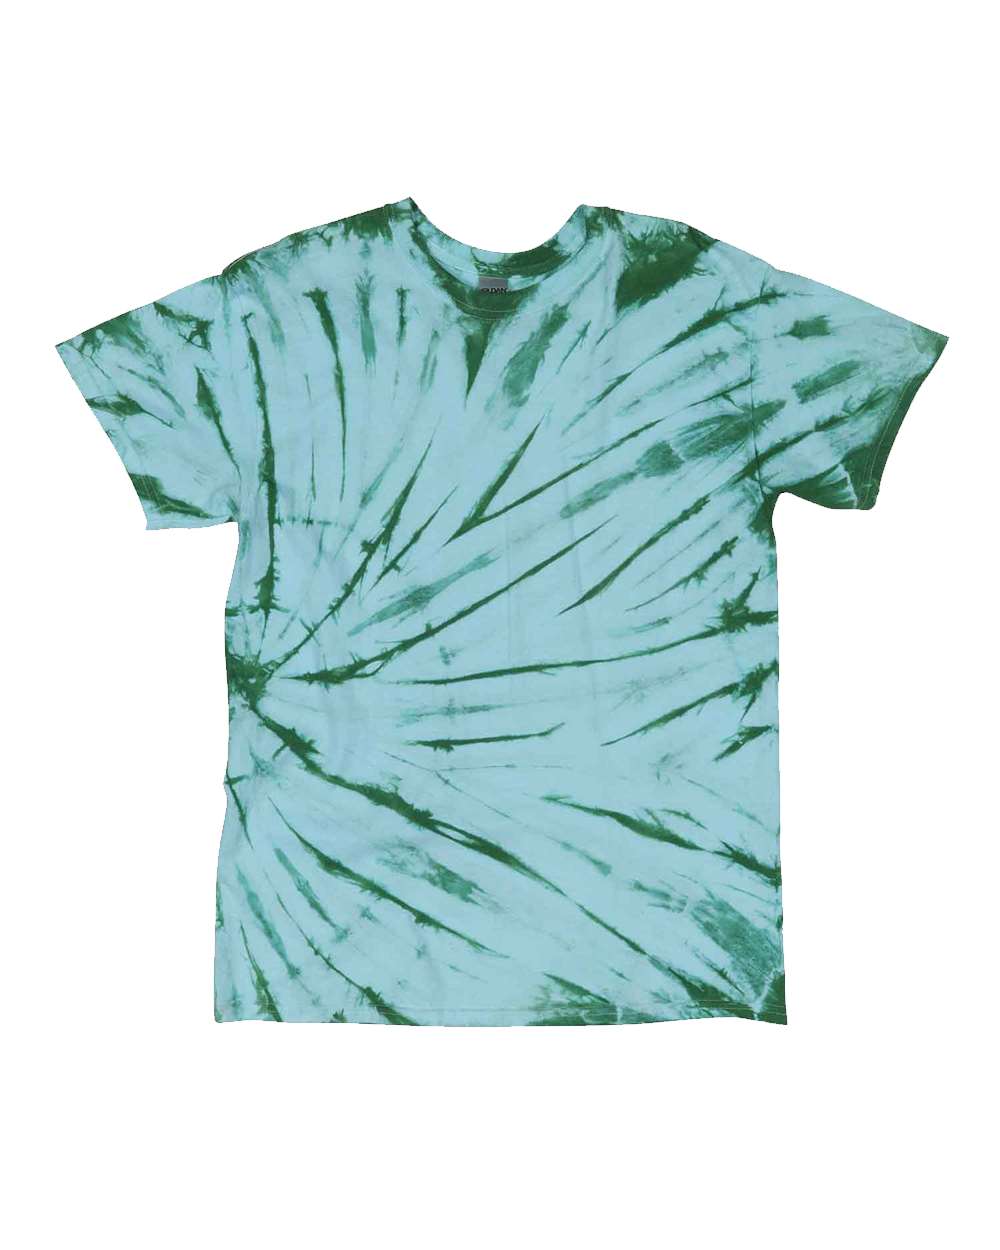 DYENOMITE&#xAE;- Sidewinder Tie-Dyed T-Shirt